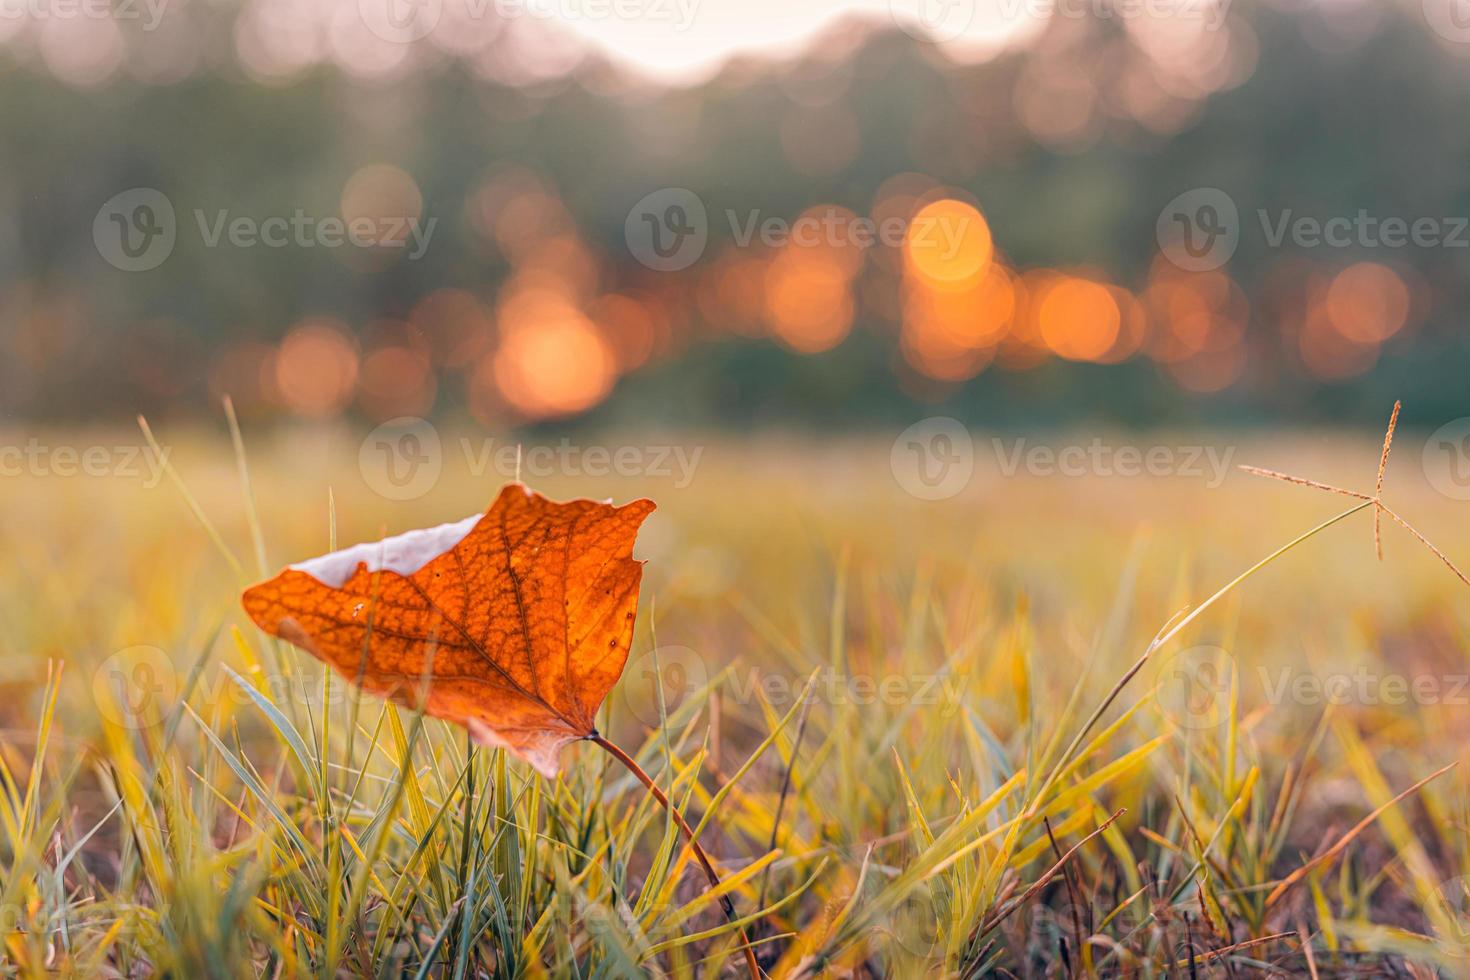 höst färgrik ljus löv på äng fält med skog träd i höstlig parkera bakgrund. suddig bokeh solnedgång ljus, höst färgrik lövverk, falla bakgrund. idyllisk natur foto